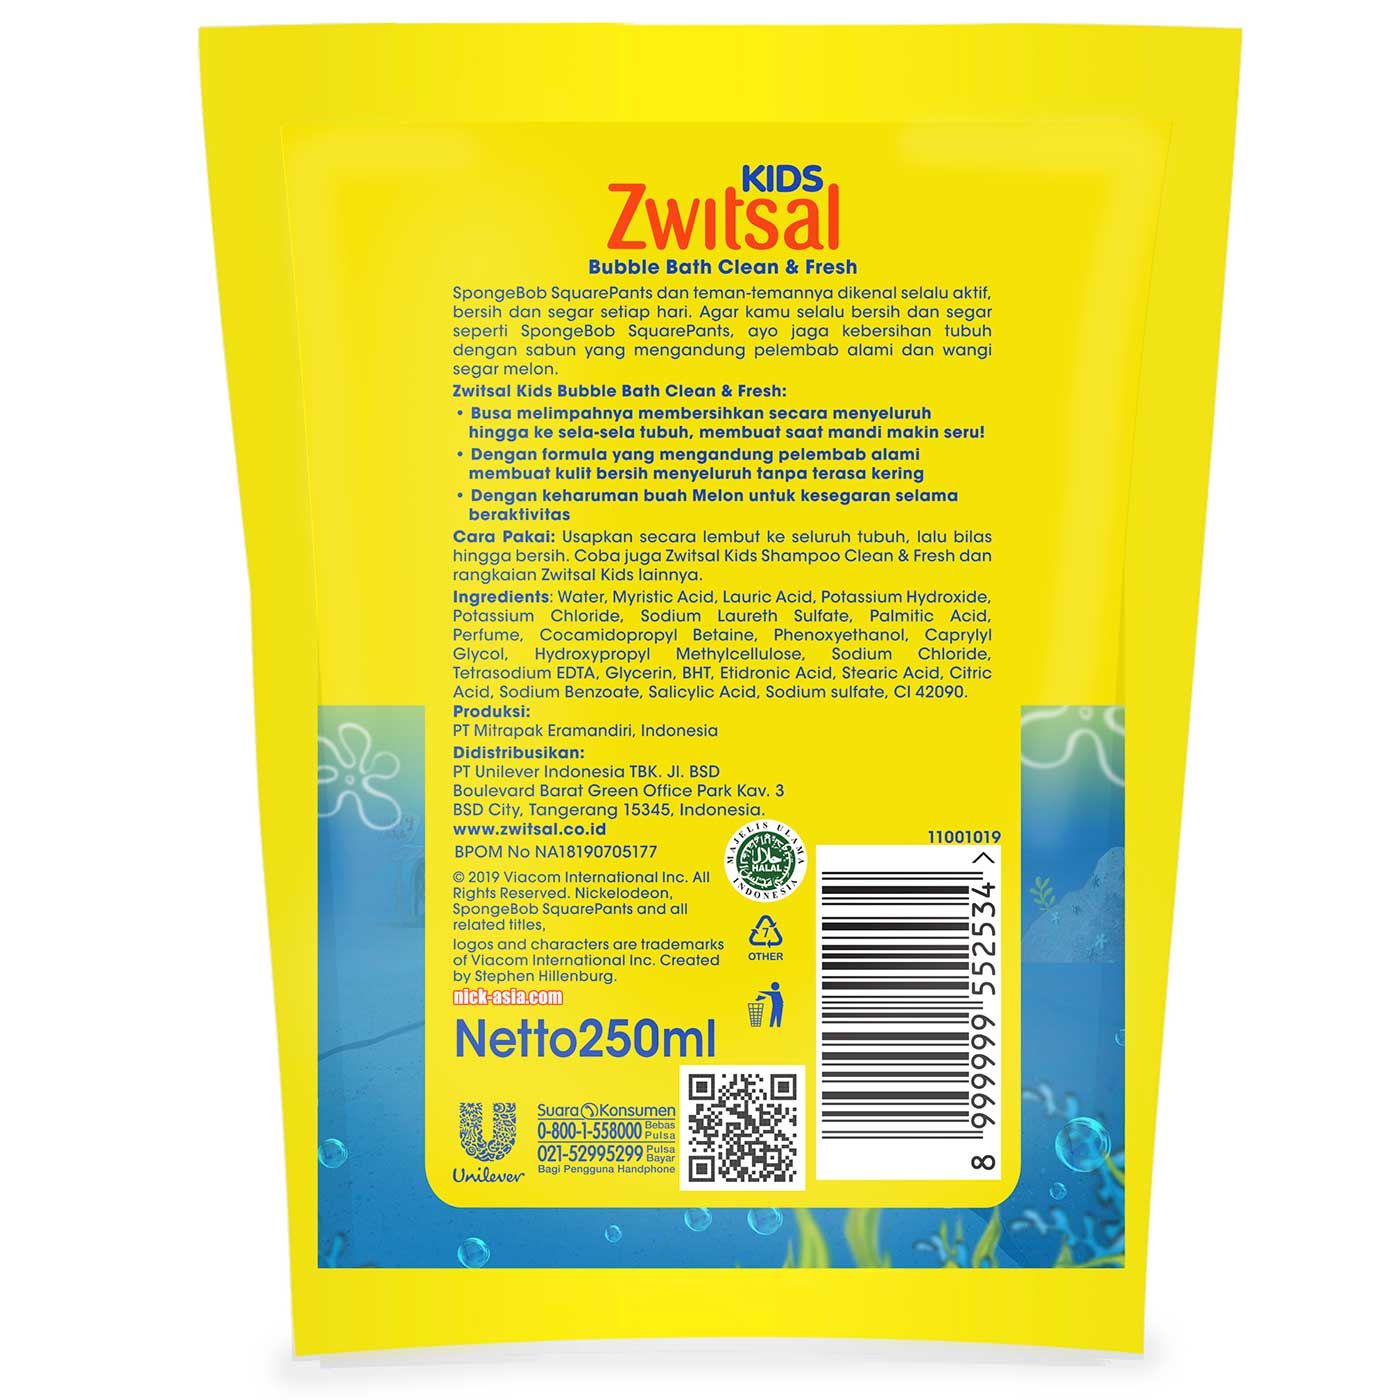 Zwitsal Kids Bubble Bath Blue Clean & Fresh 250 ml - 4